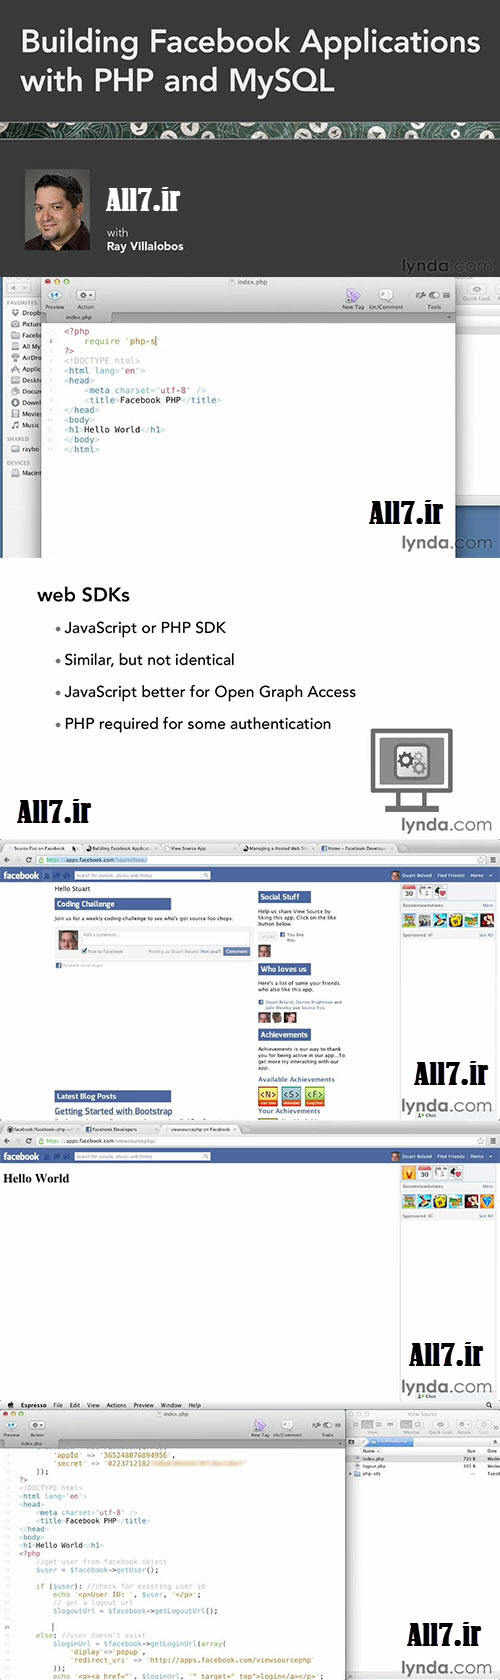 آموزش ساخت اپلیکیشن های فیسبوک با PHP و MySQL